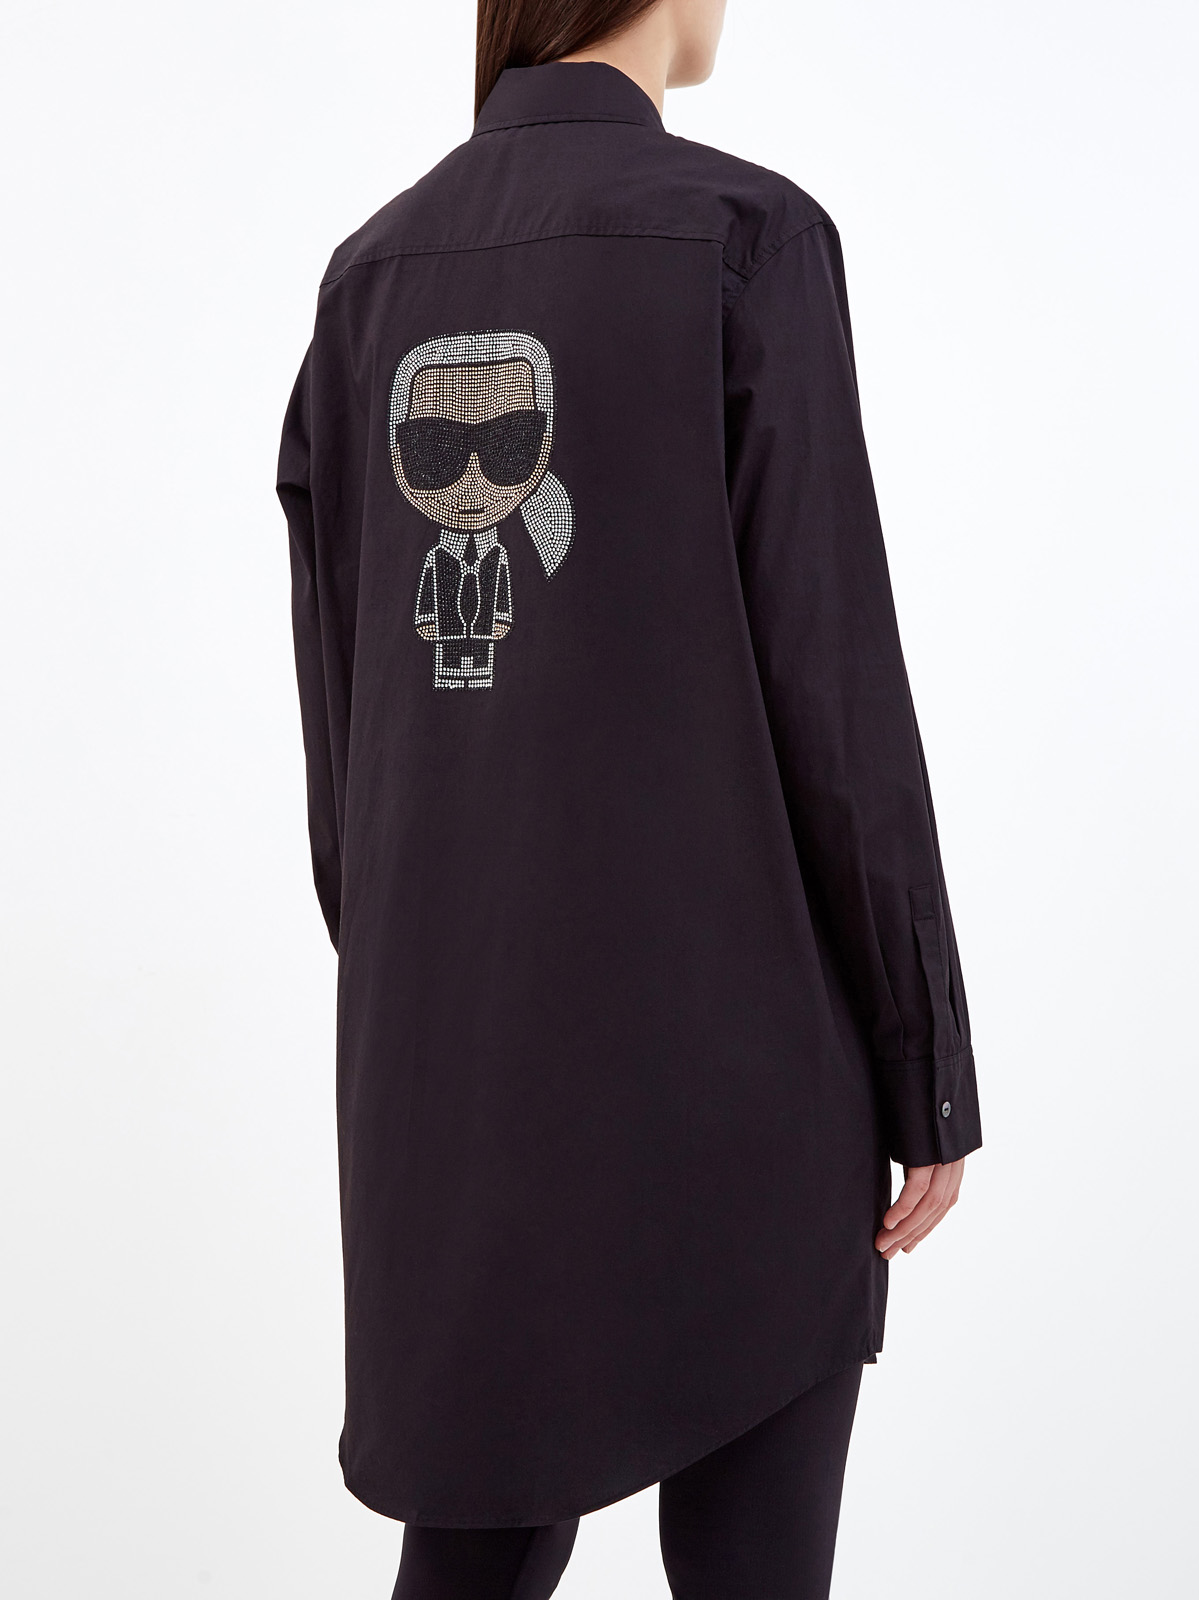 Удлиненная рубашка K/Ikonik с макро-аппликацией из стразов KARL LAGERFELD, цвет черный, размер XS;S;M Удлиненная рубашка K/Ikonik с макро-аппликацией из стразов - фото 4